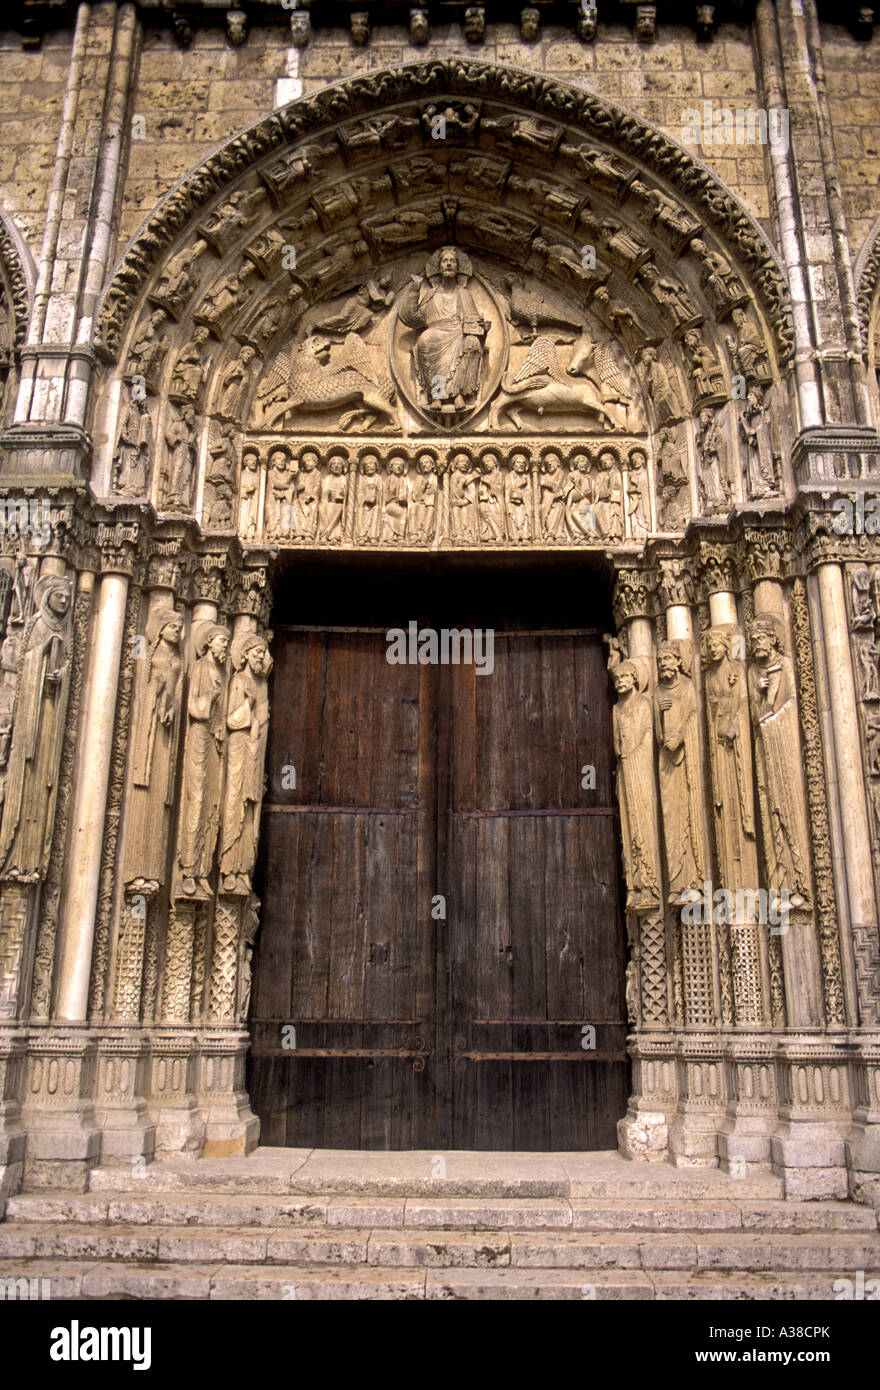 Portail royal, portail royale, la cathédrale de Chartres, cathédrale Notre-Dame de Chartres, Chartres, région centre, France, Europe Banque D'Images